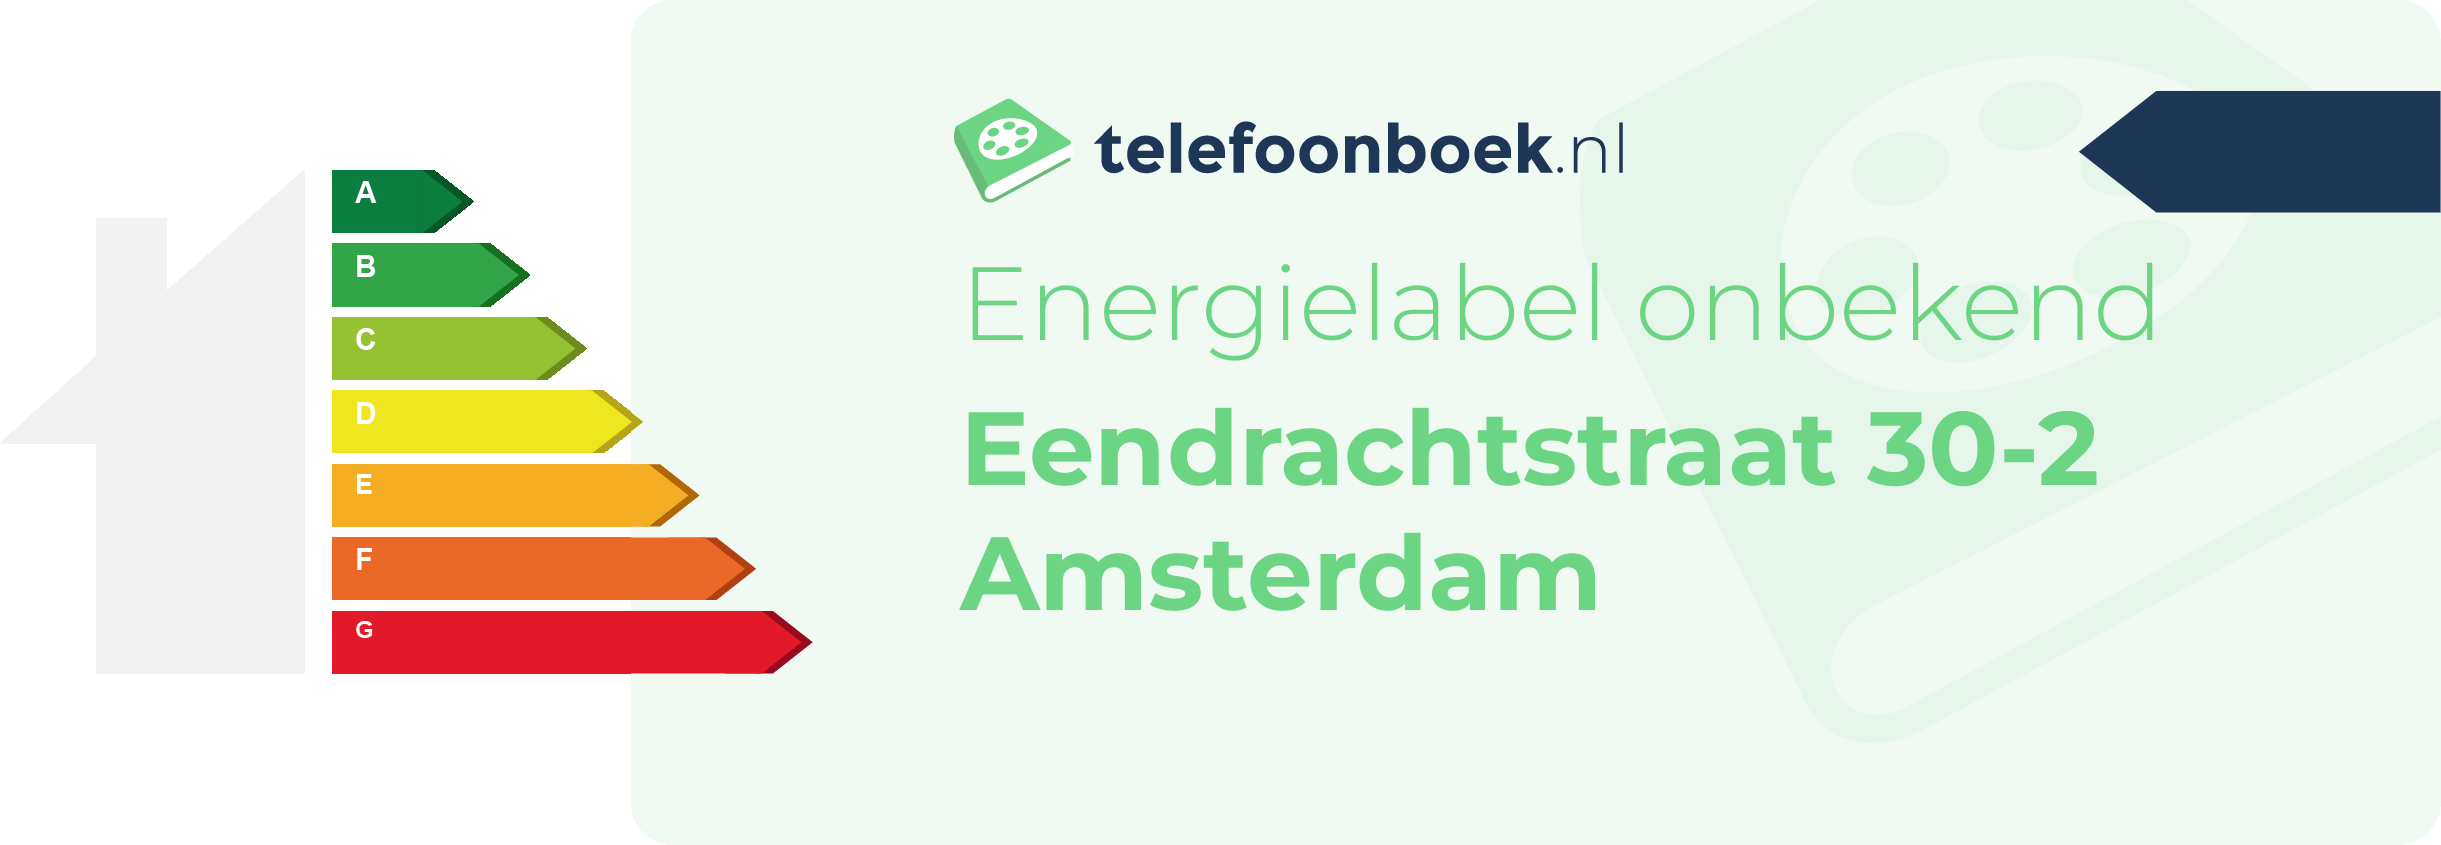 Energielabel Eendrachtstraat 30-2 Amsterdam